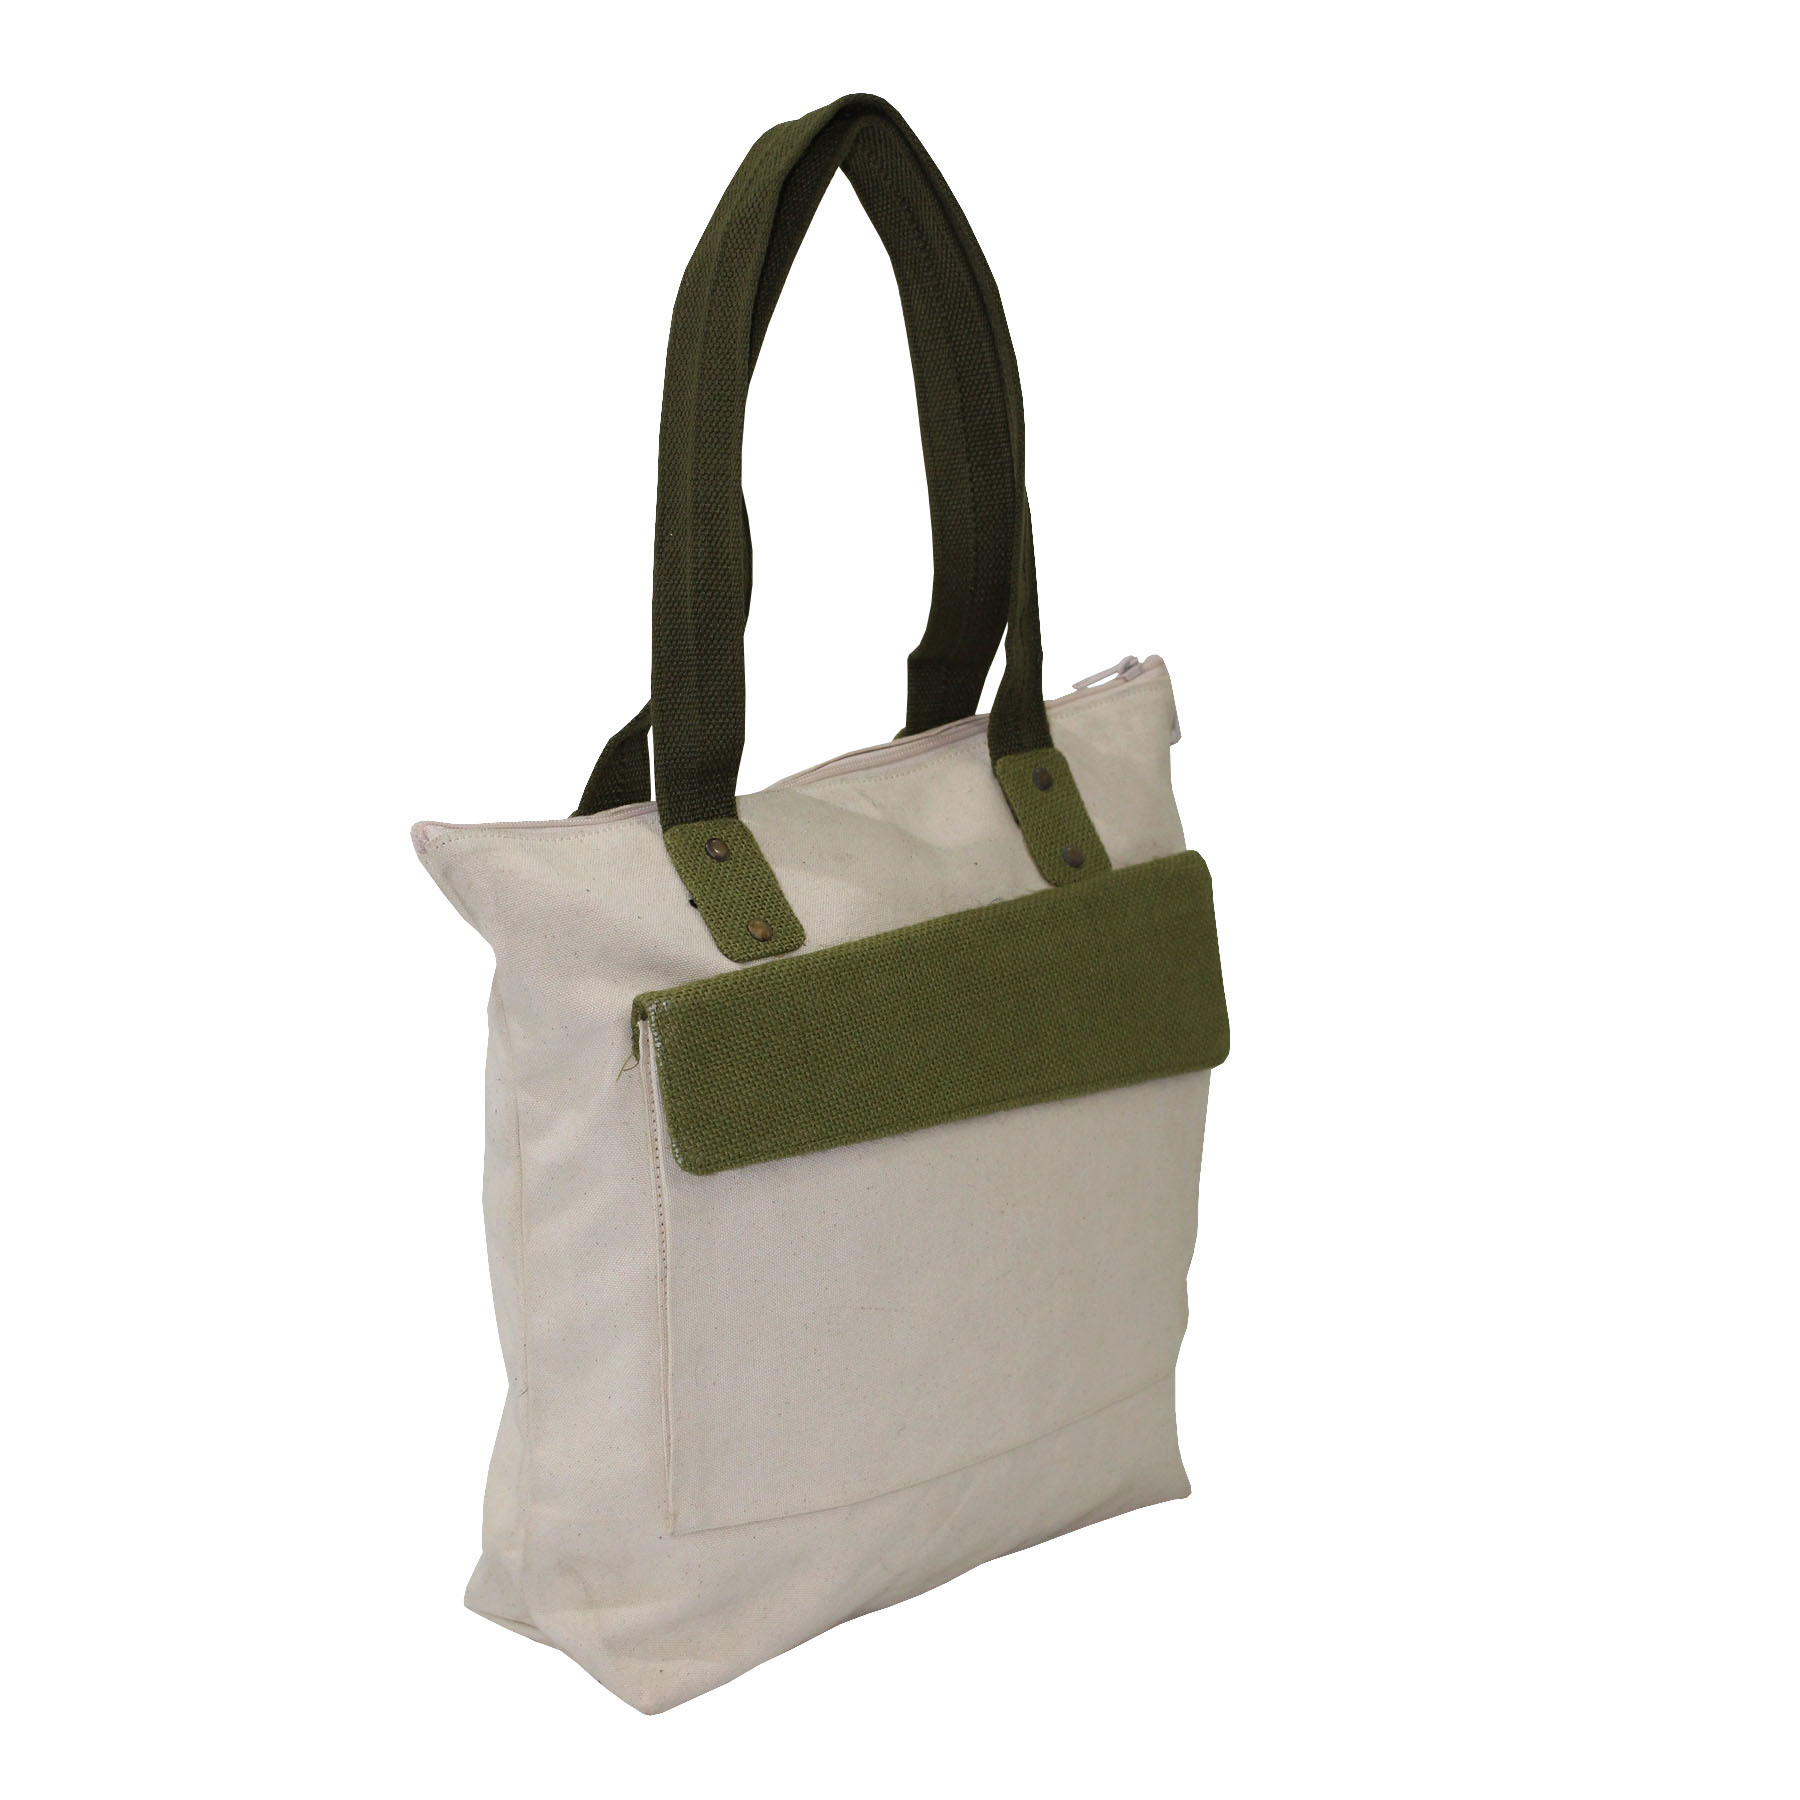 Designer Canvas Handbag With Cotton Handle